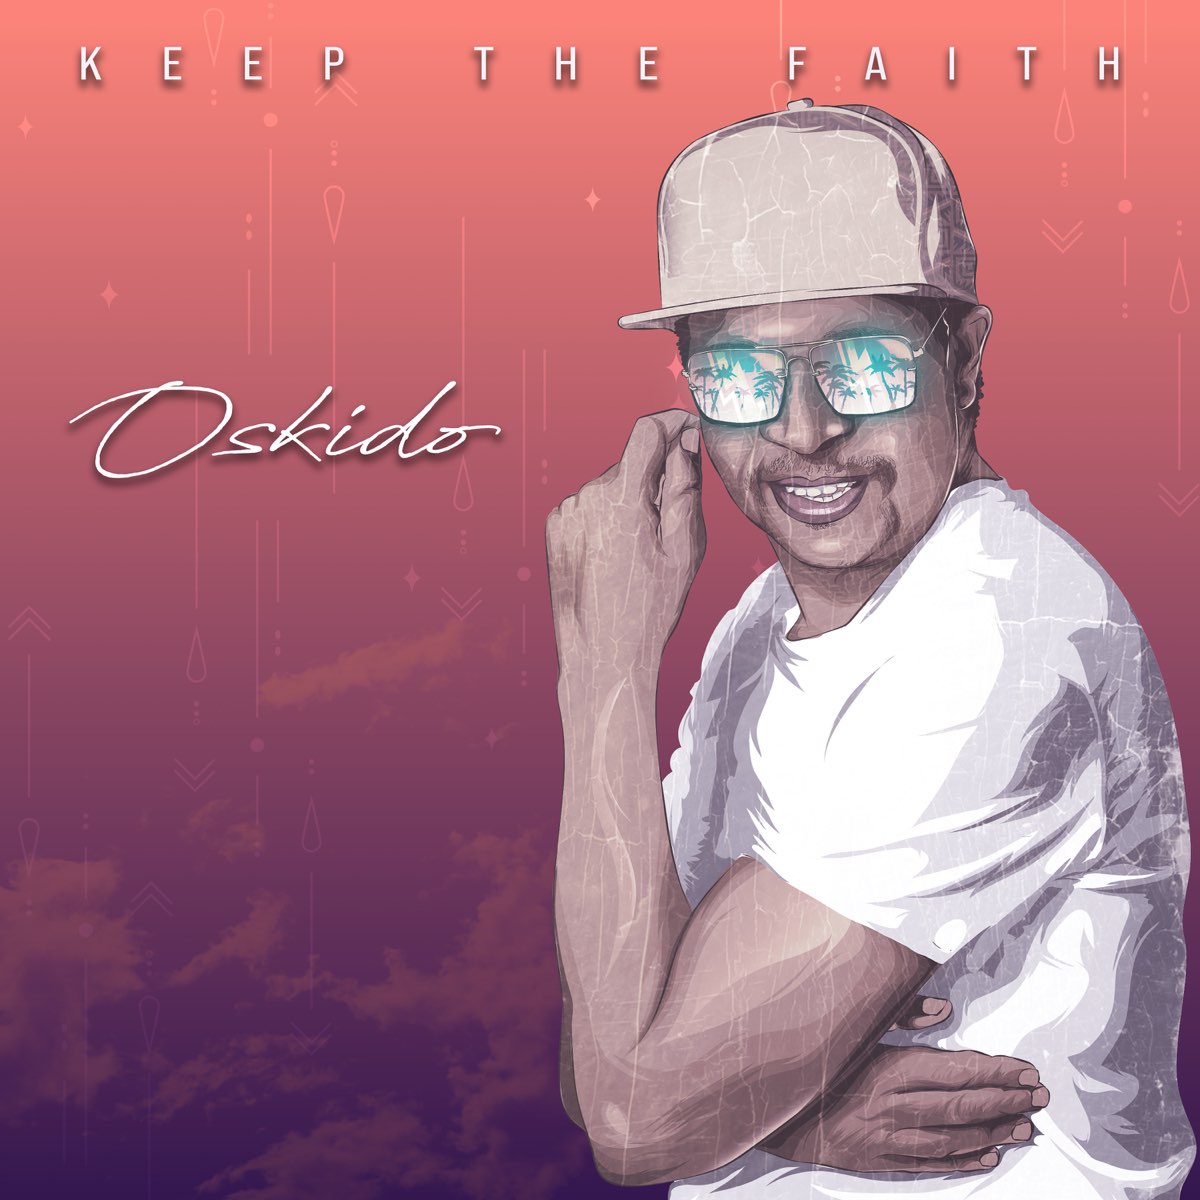 Keep The Faith - Album by OSKIDO - Apple Music